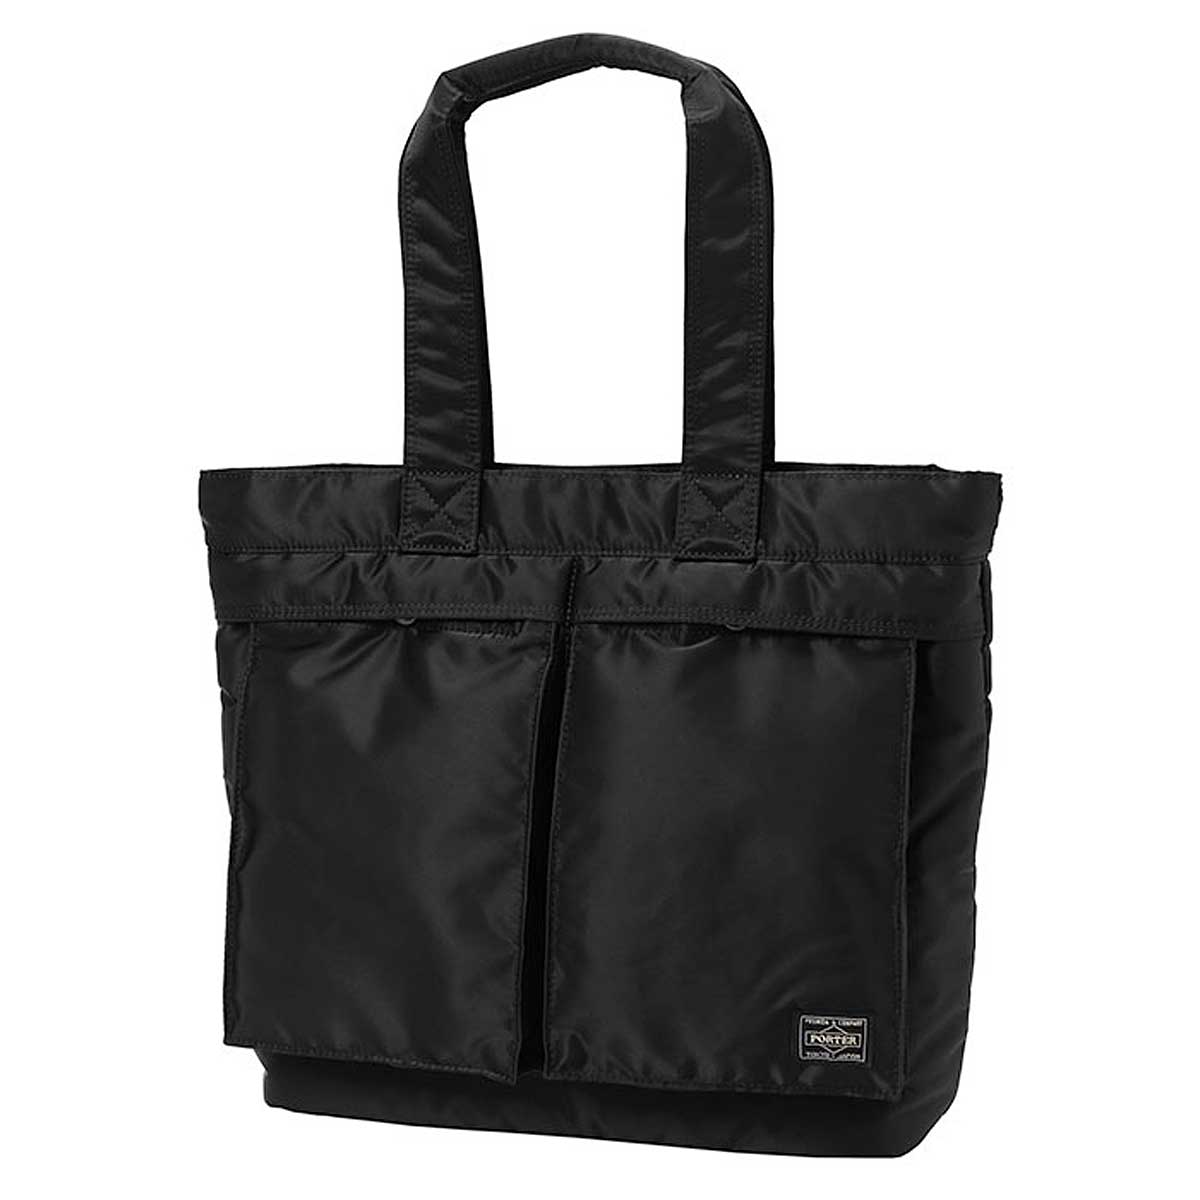 Porter Yoshida Tanker Tote Bag: Compre ahora en KICKZ.com